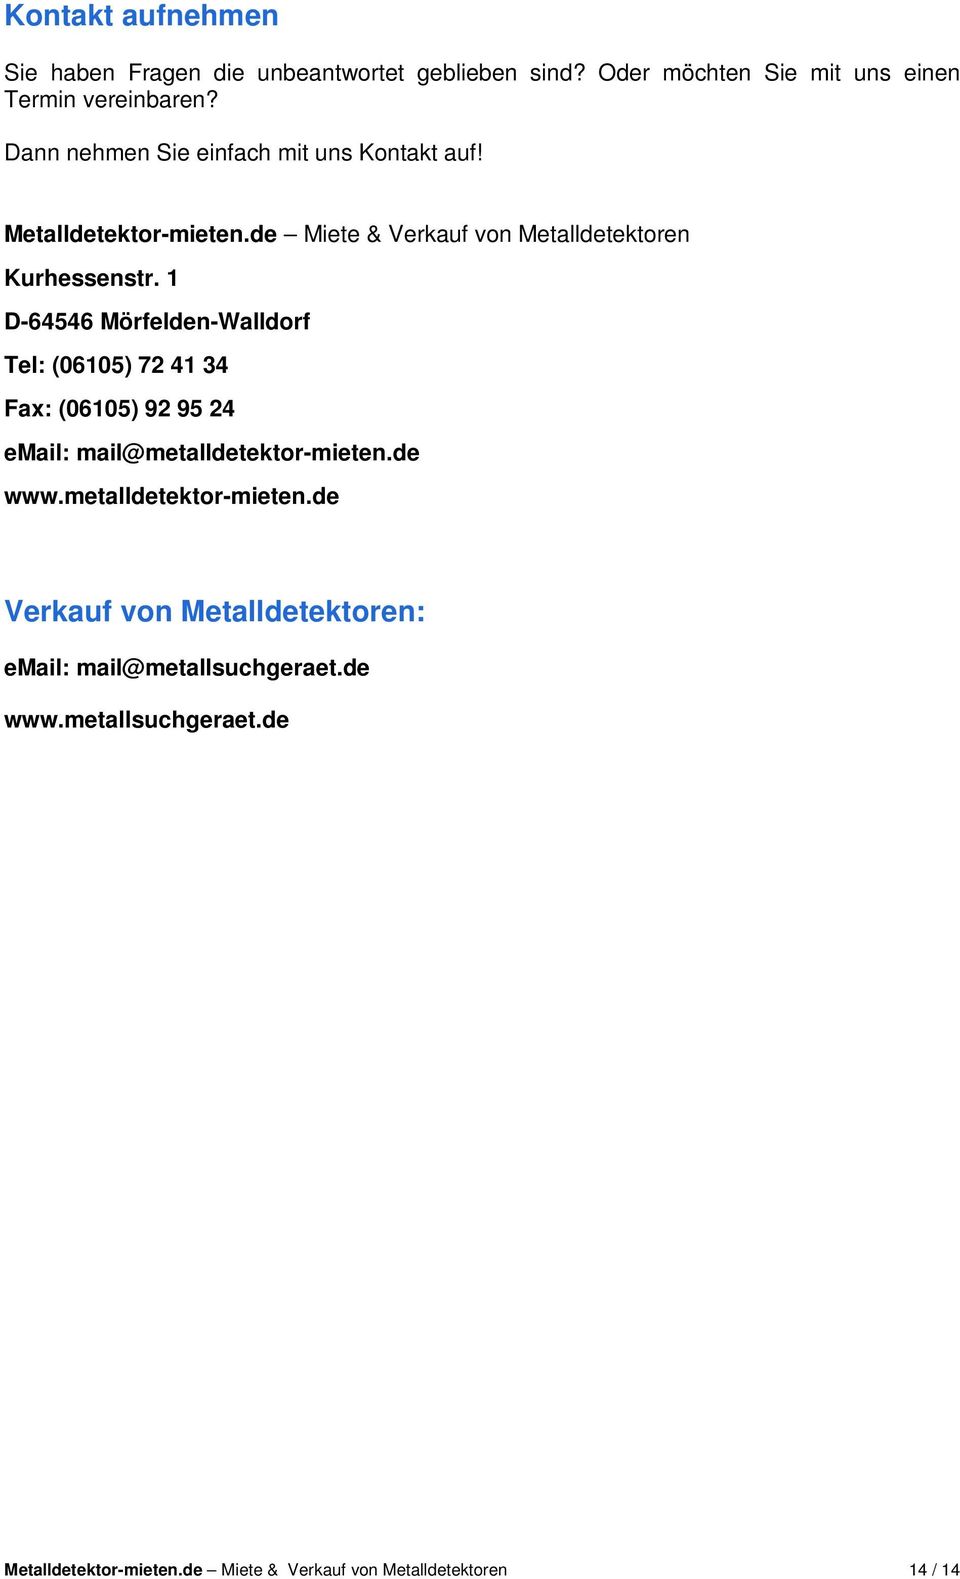 1 D-64546 Mörfelden-Walldorf Tel: (06105) 72 41 34 Fax: (06105) 92 95 24 email: mail@metalldetektor-mieten.de www.